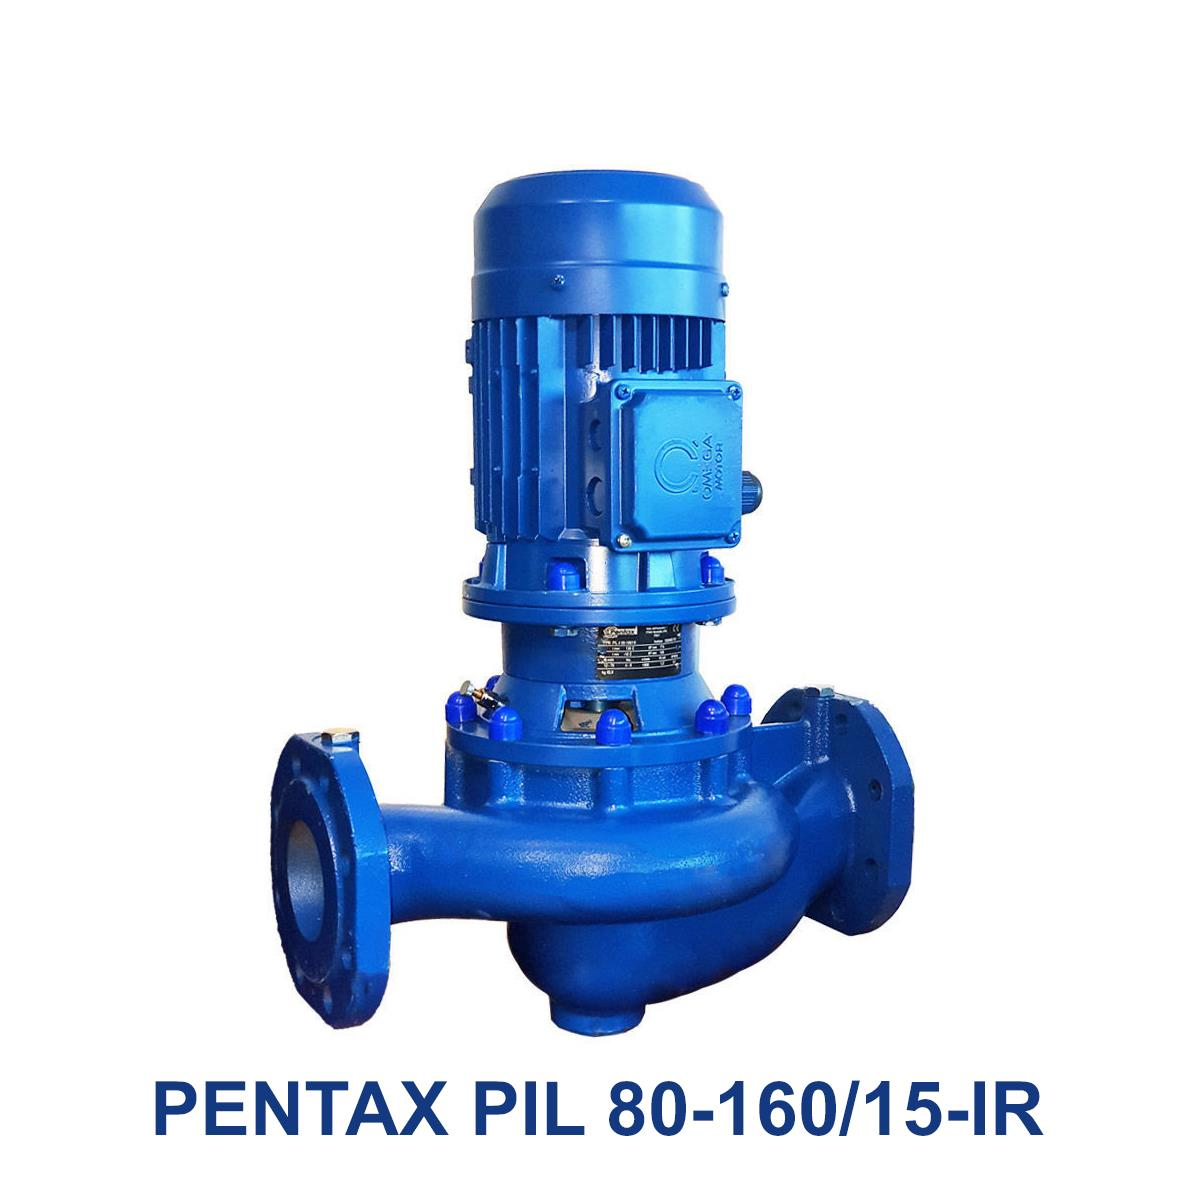 PENTAX-PIL-80-160-15-IR